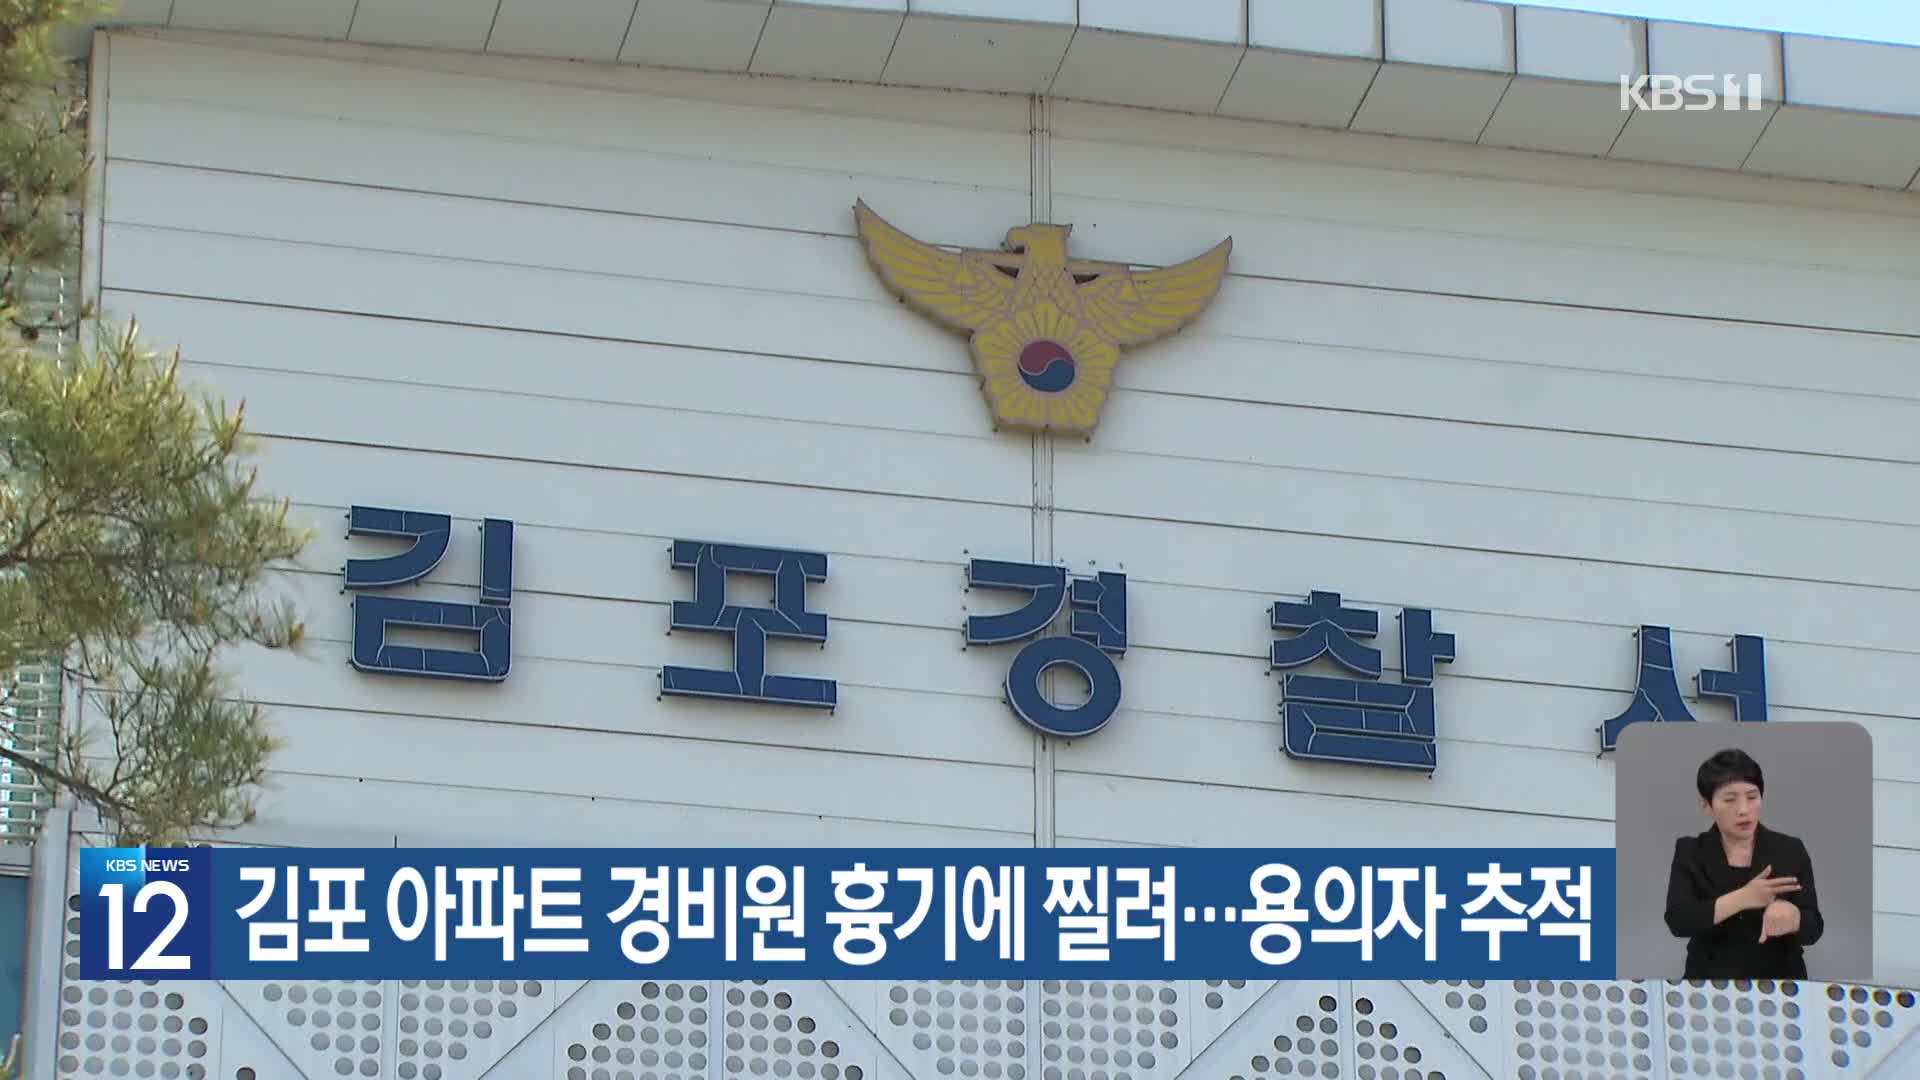 김포 아파트 경비원 흉기에 찔려…용의자 추적